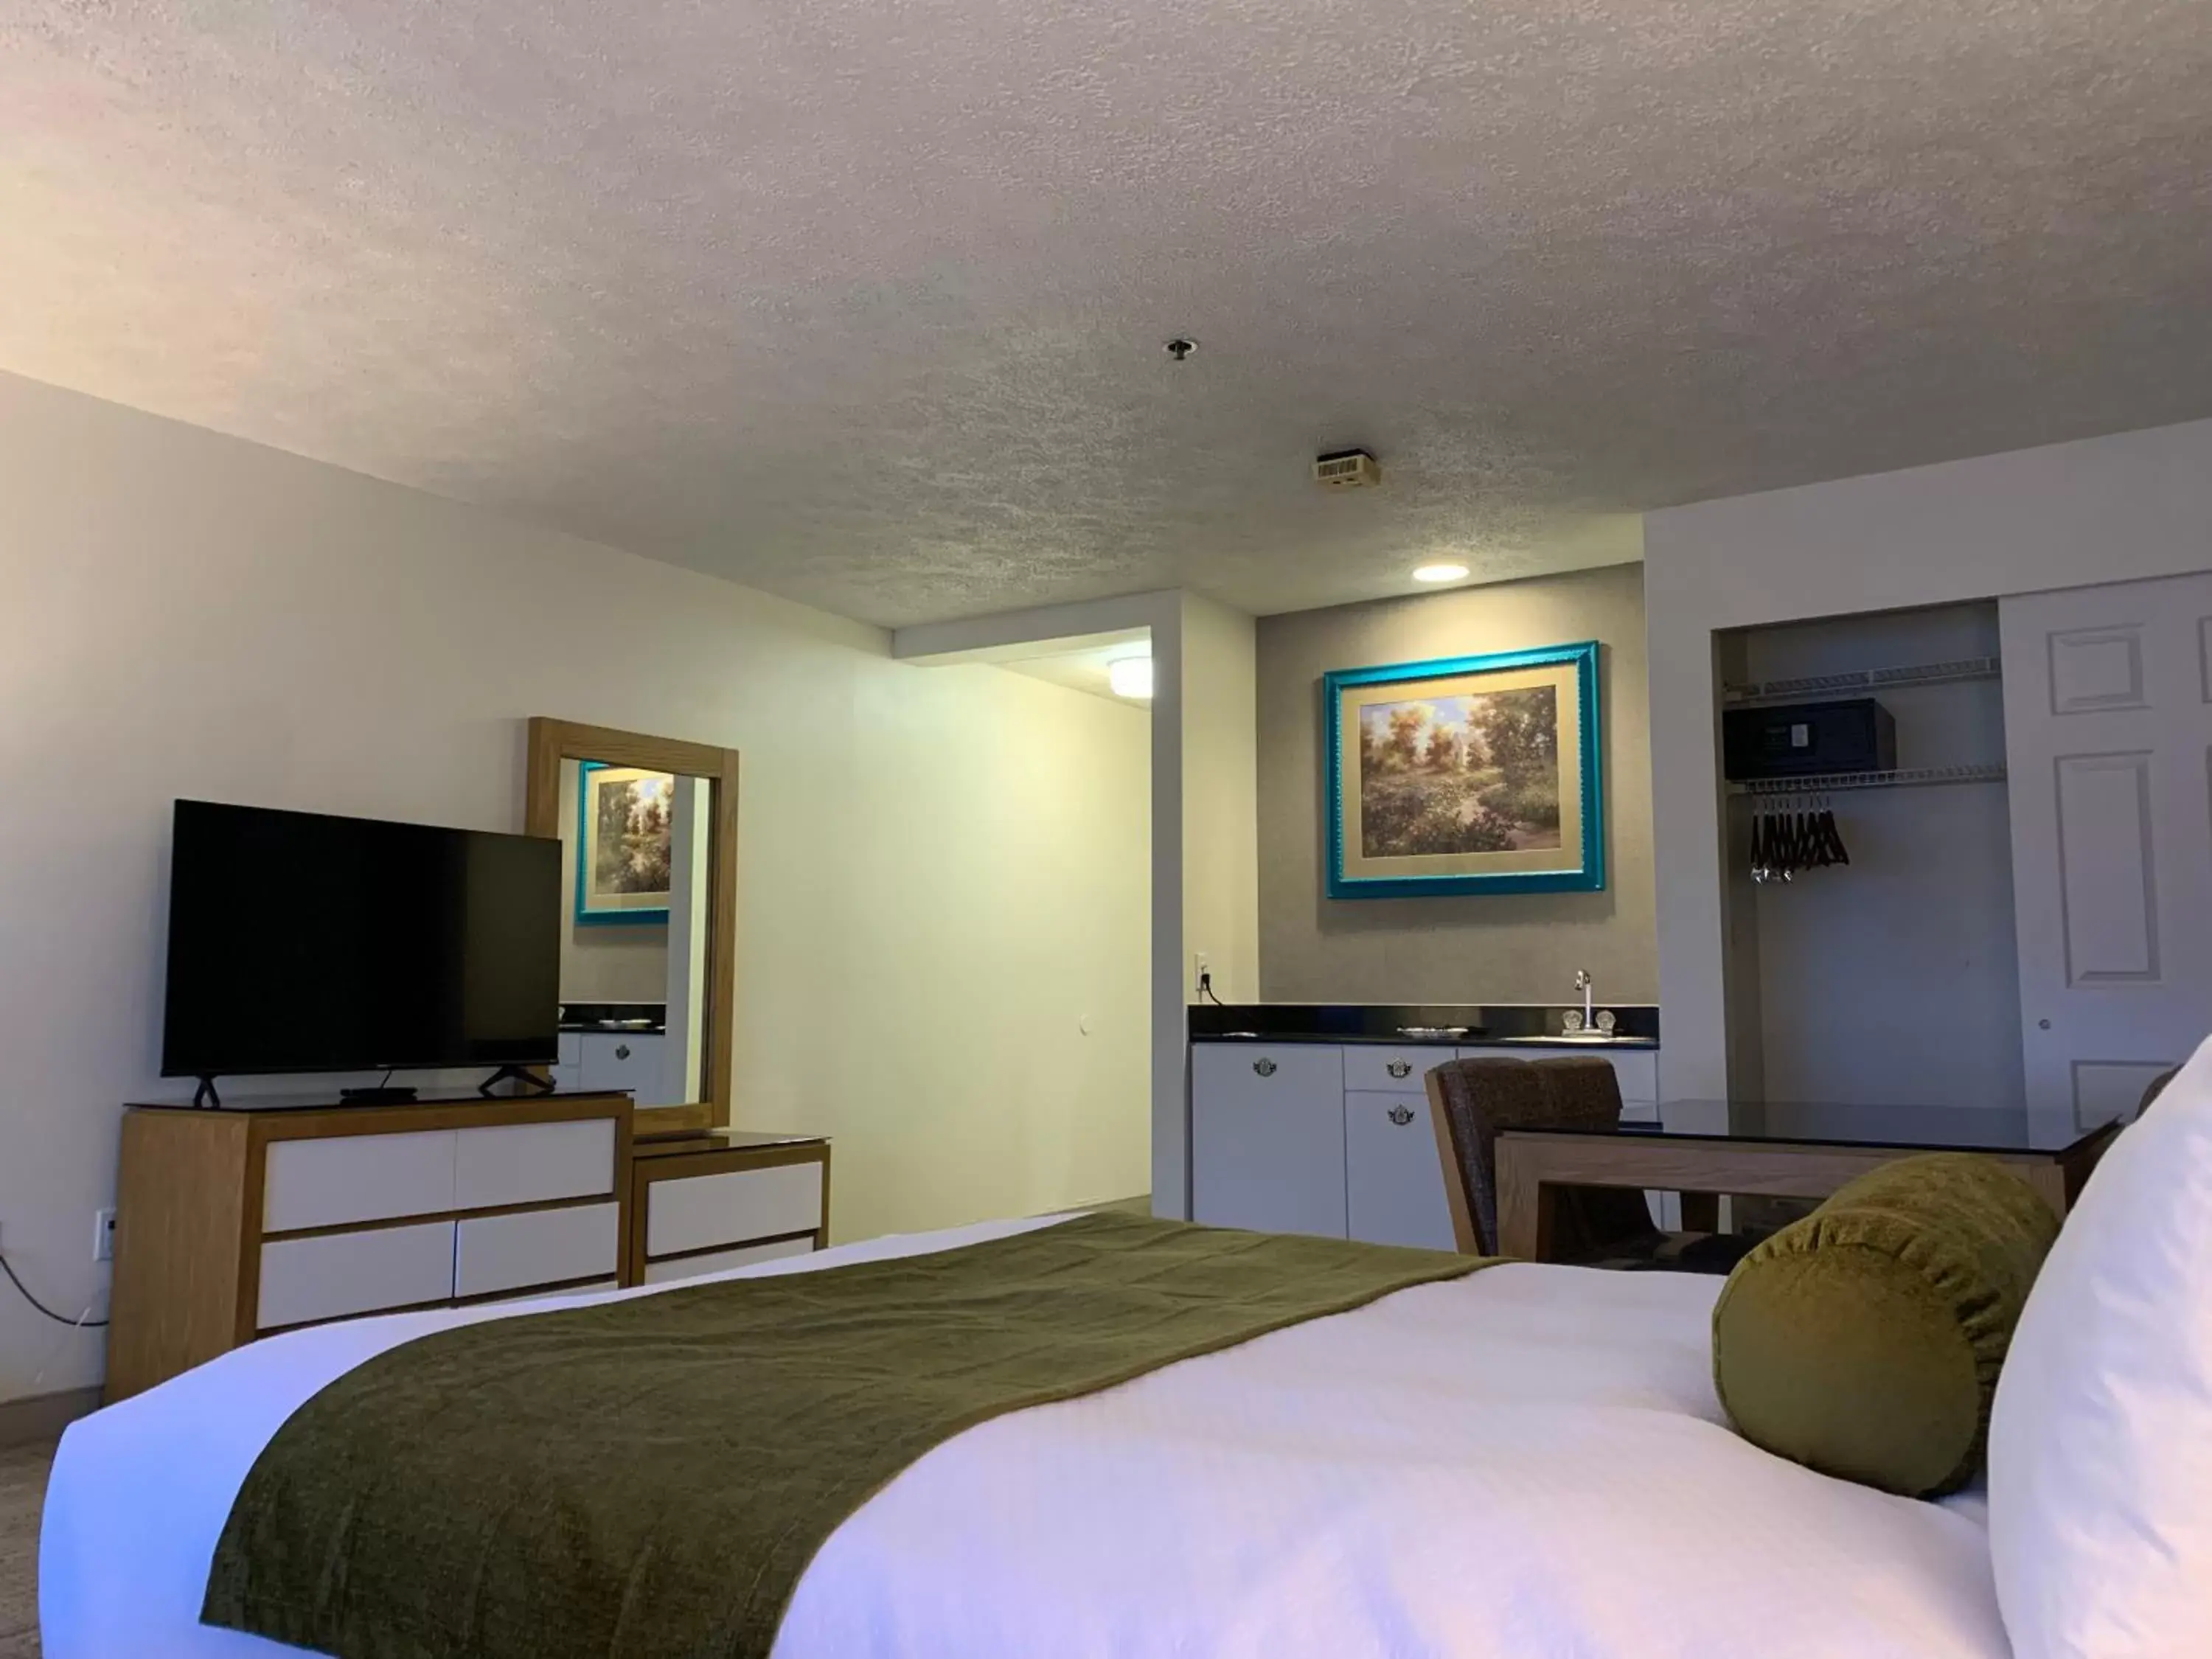 Bedroom, TV/Entertainment Center in Split Rock Resort